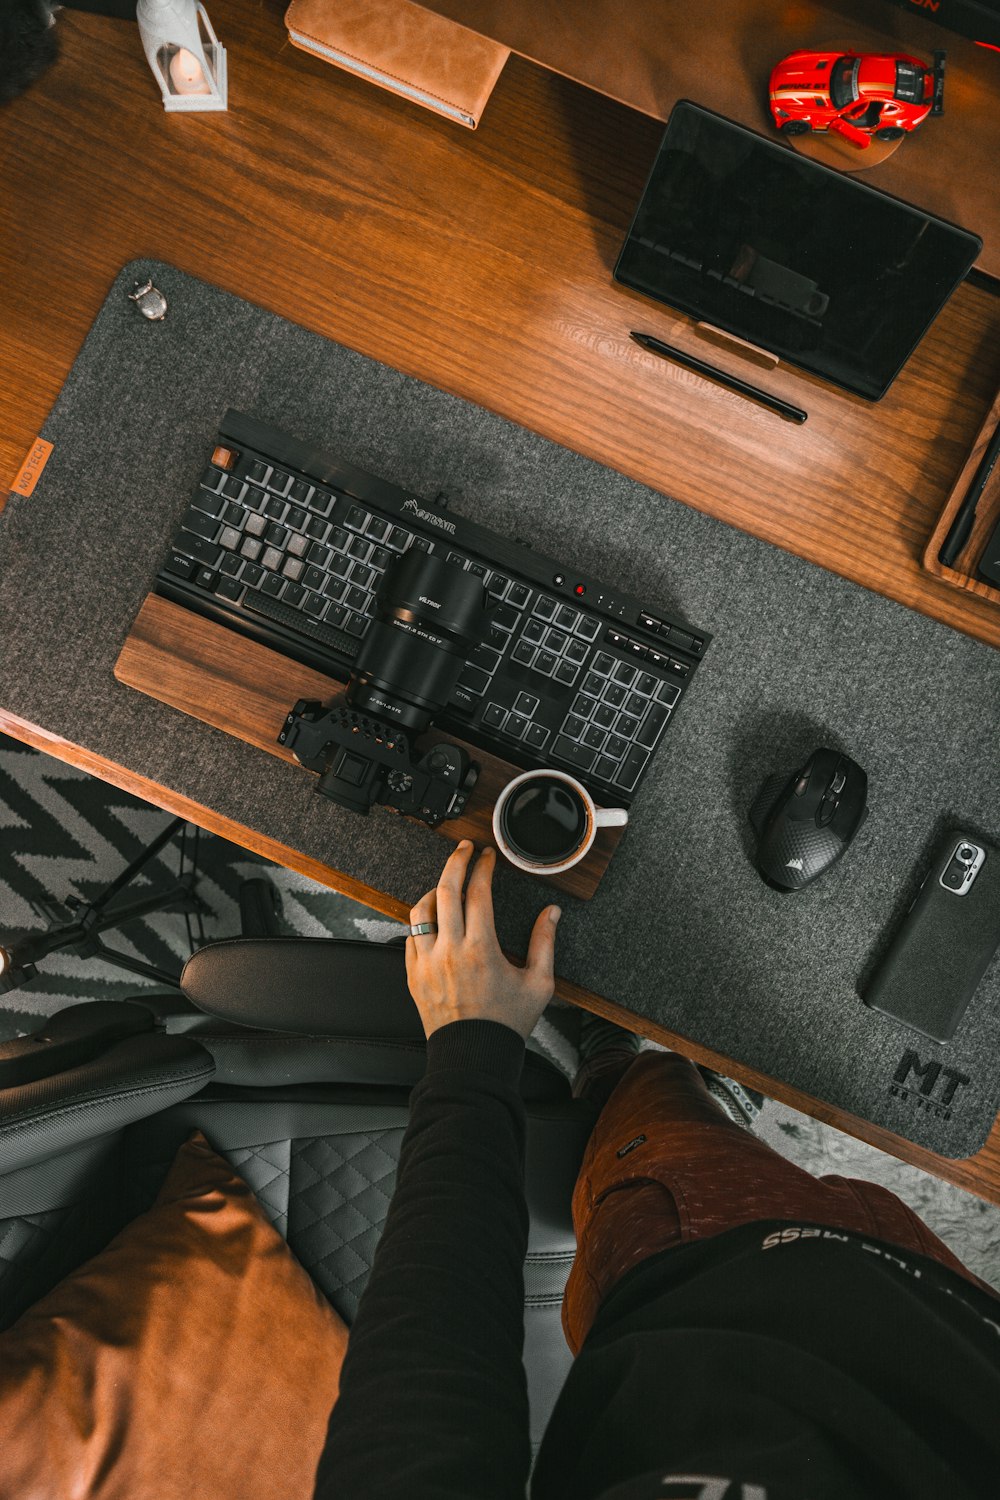 eine Person, die mit Tastatur und Maus an einem Schreibtisch sitzt